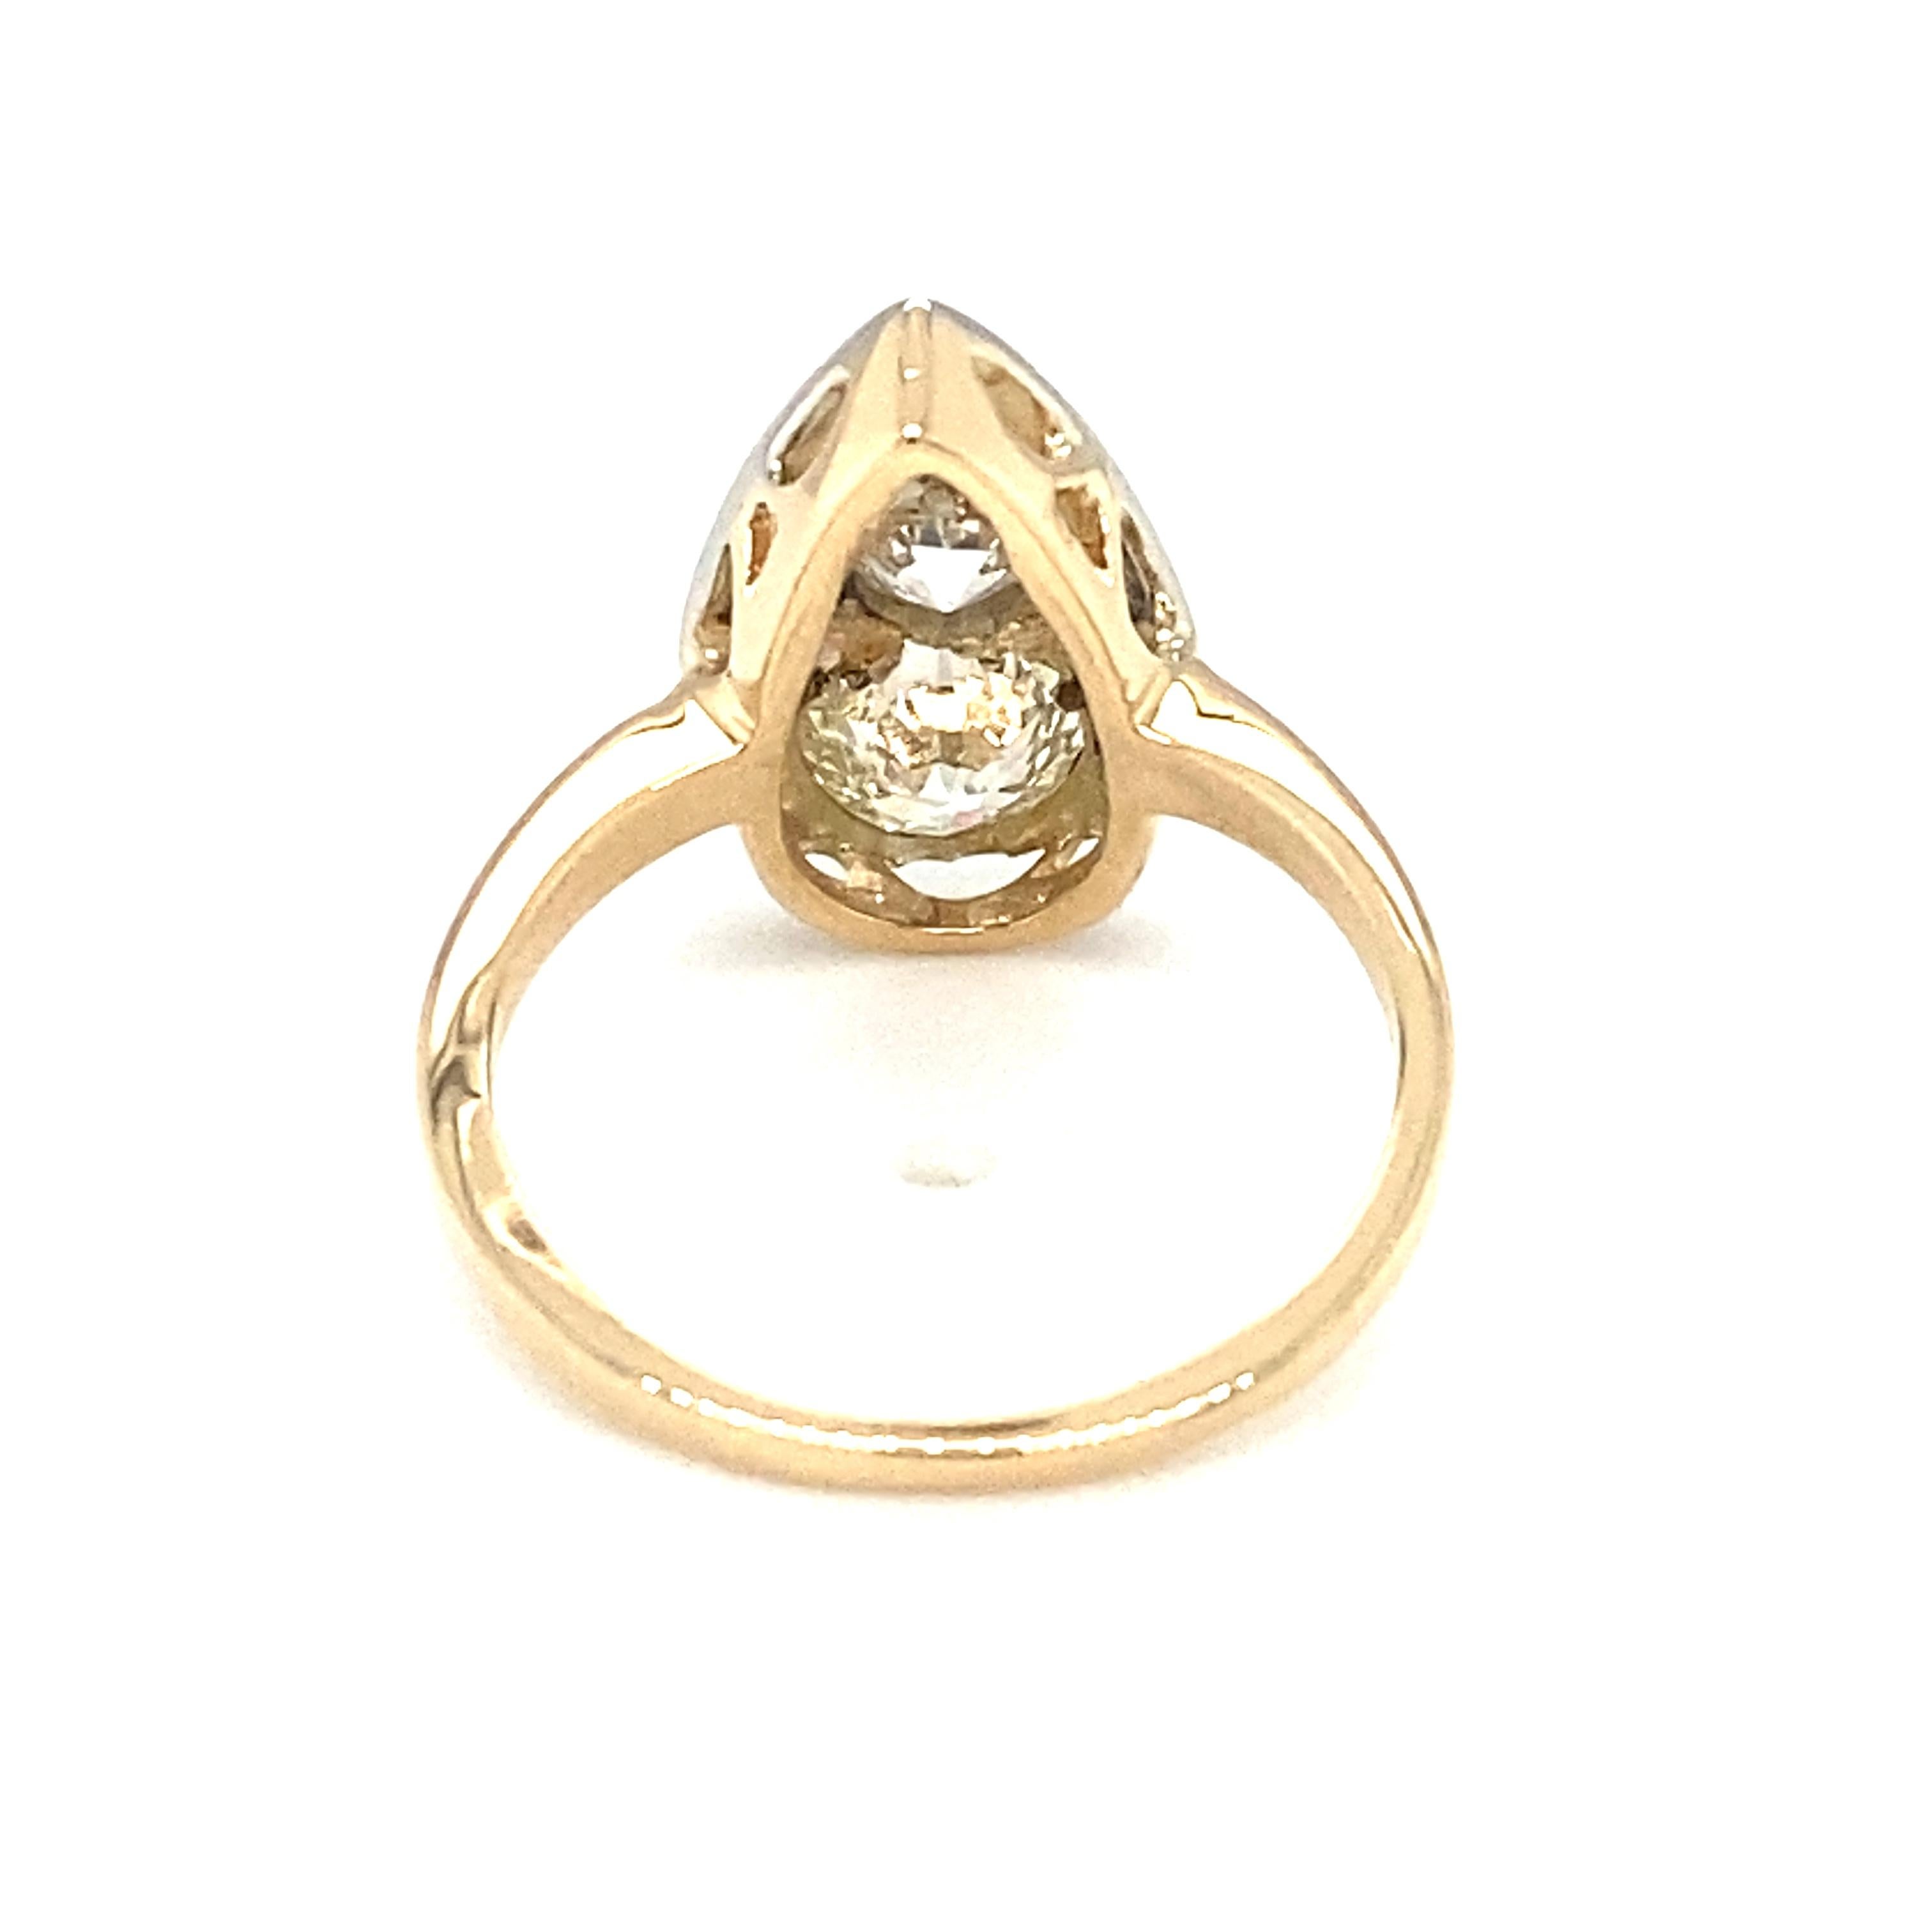 Circa 1920s Art Deco 1.30 Carat Total Diamond Ring in 14 Karat Gold 1